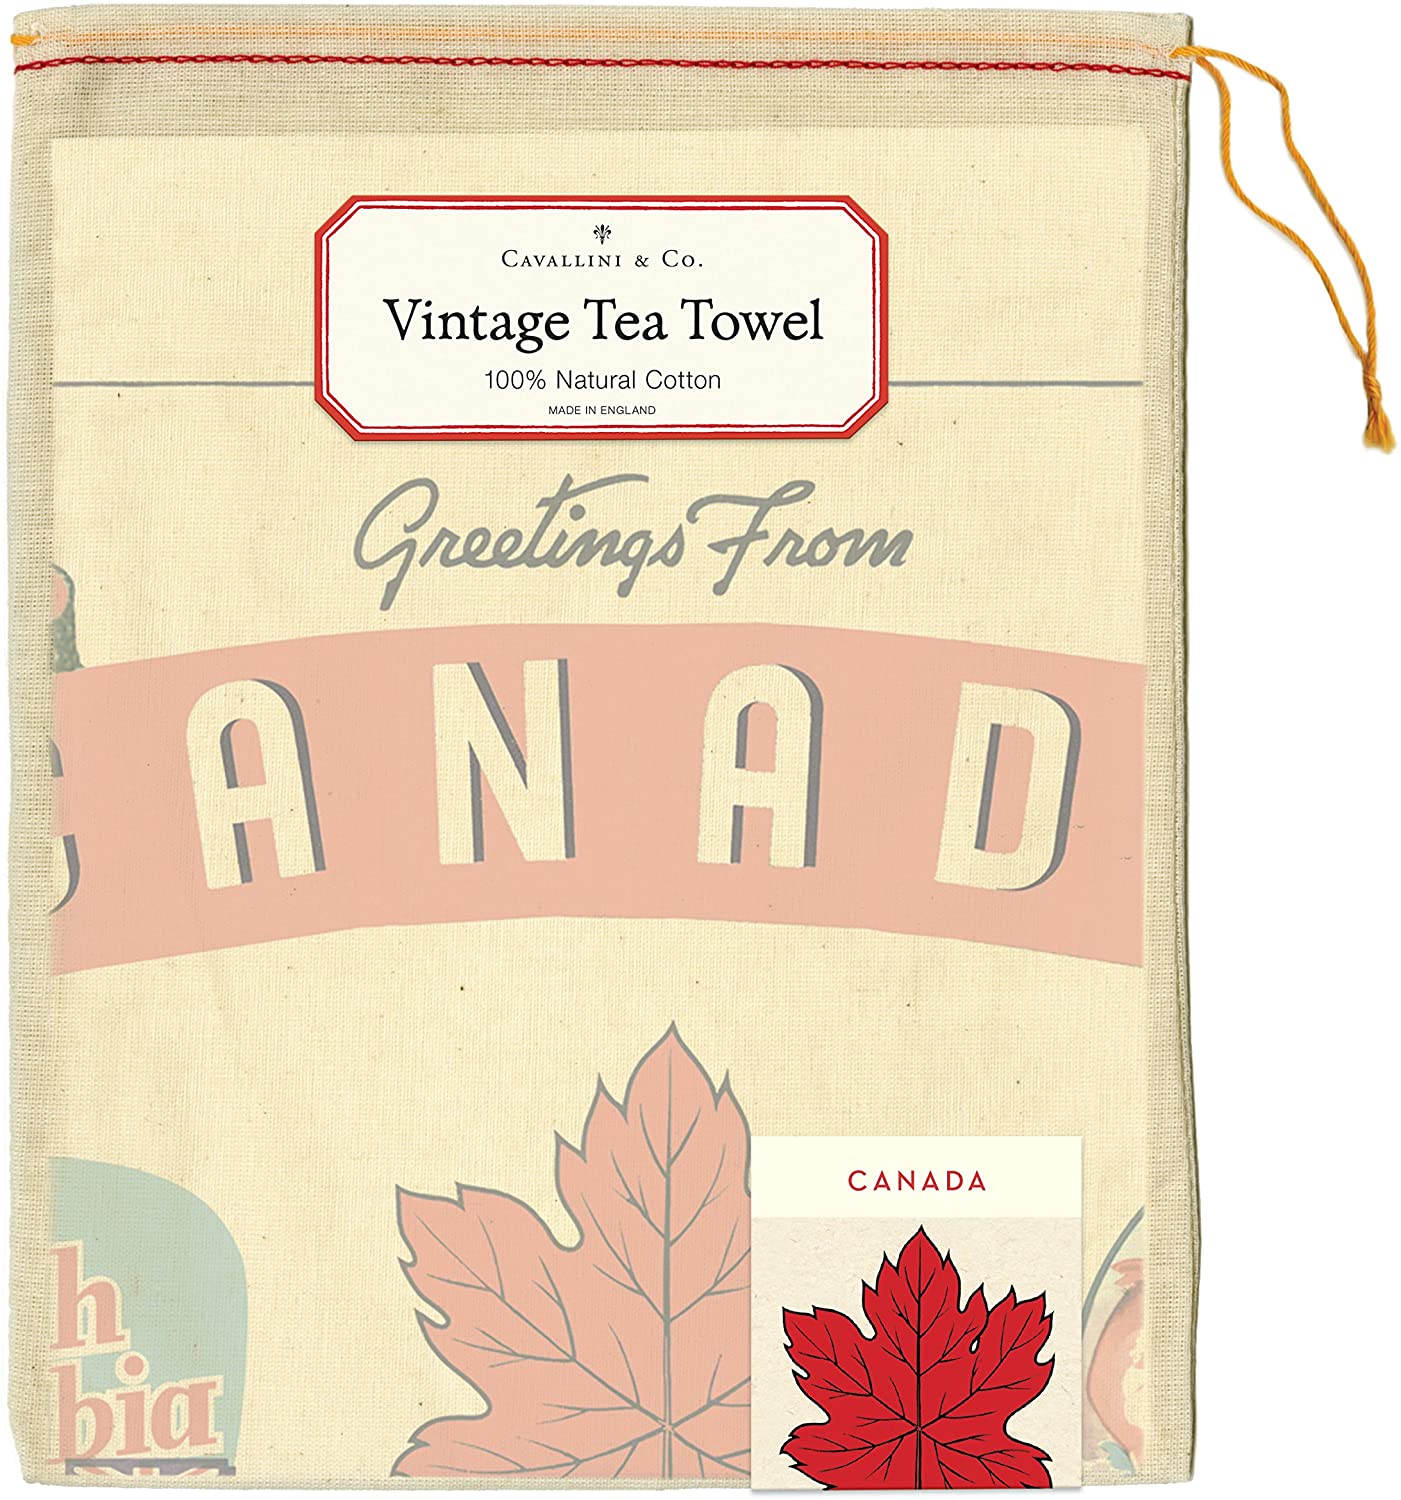 Cavallini & Co. Vintage Tea Towels